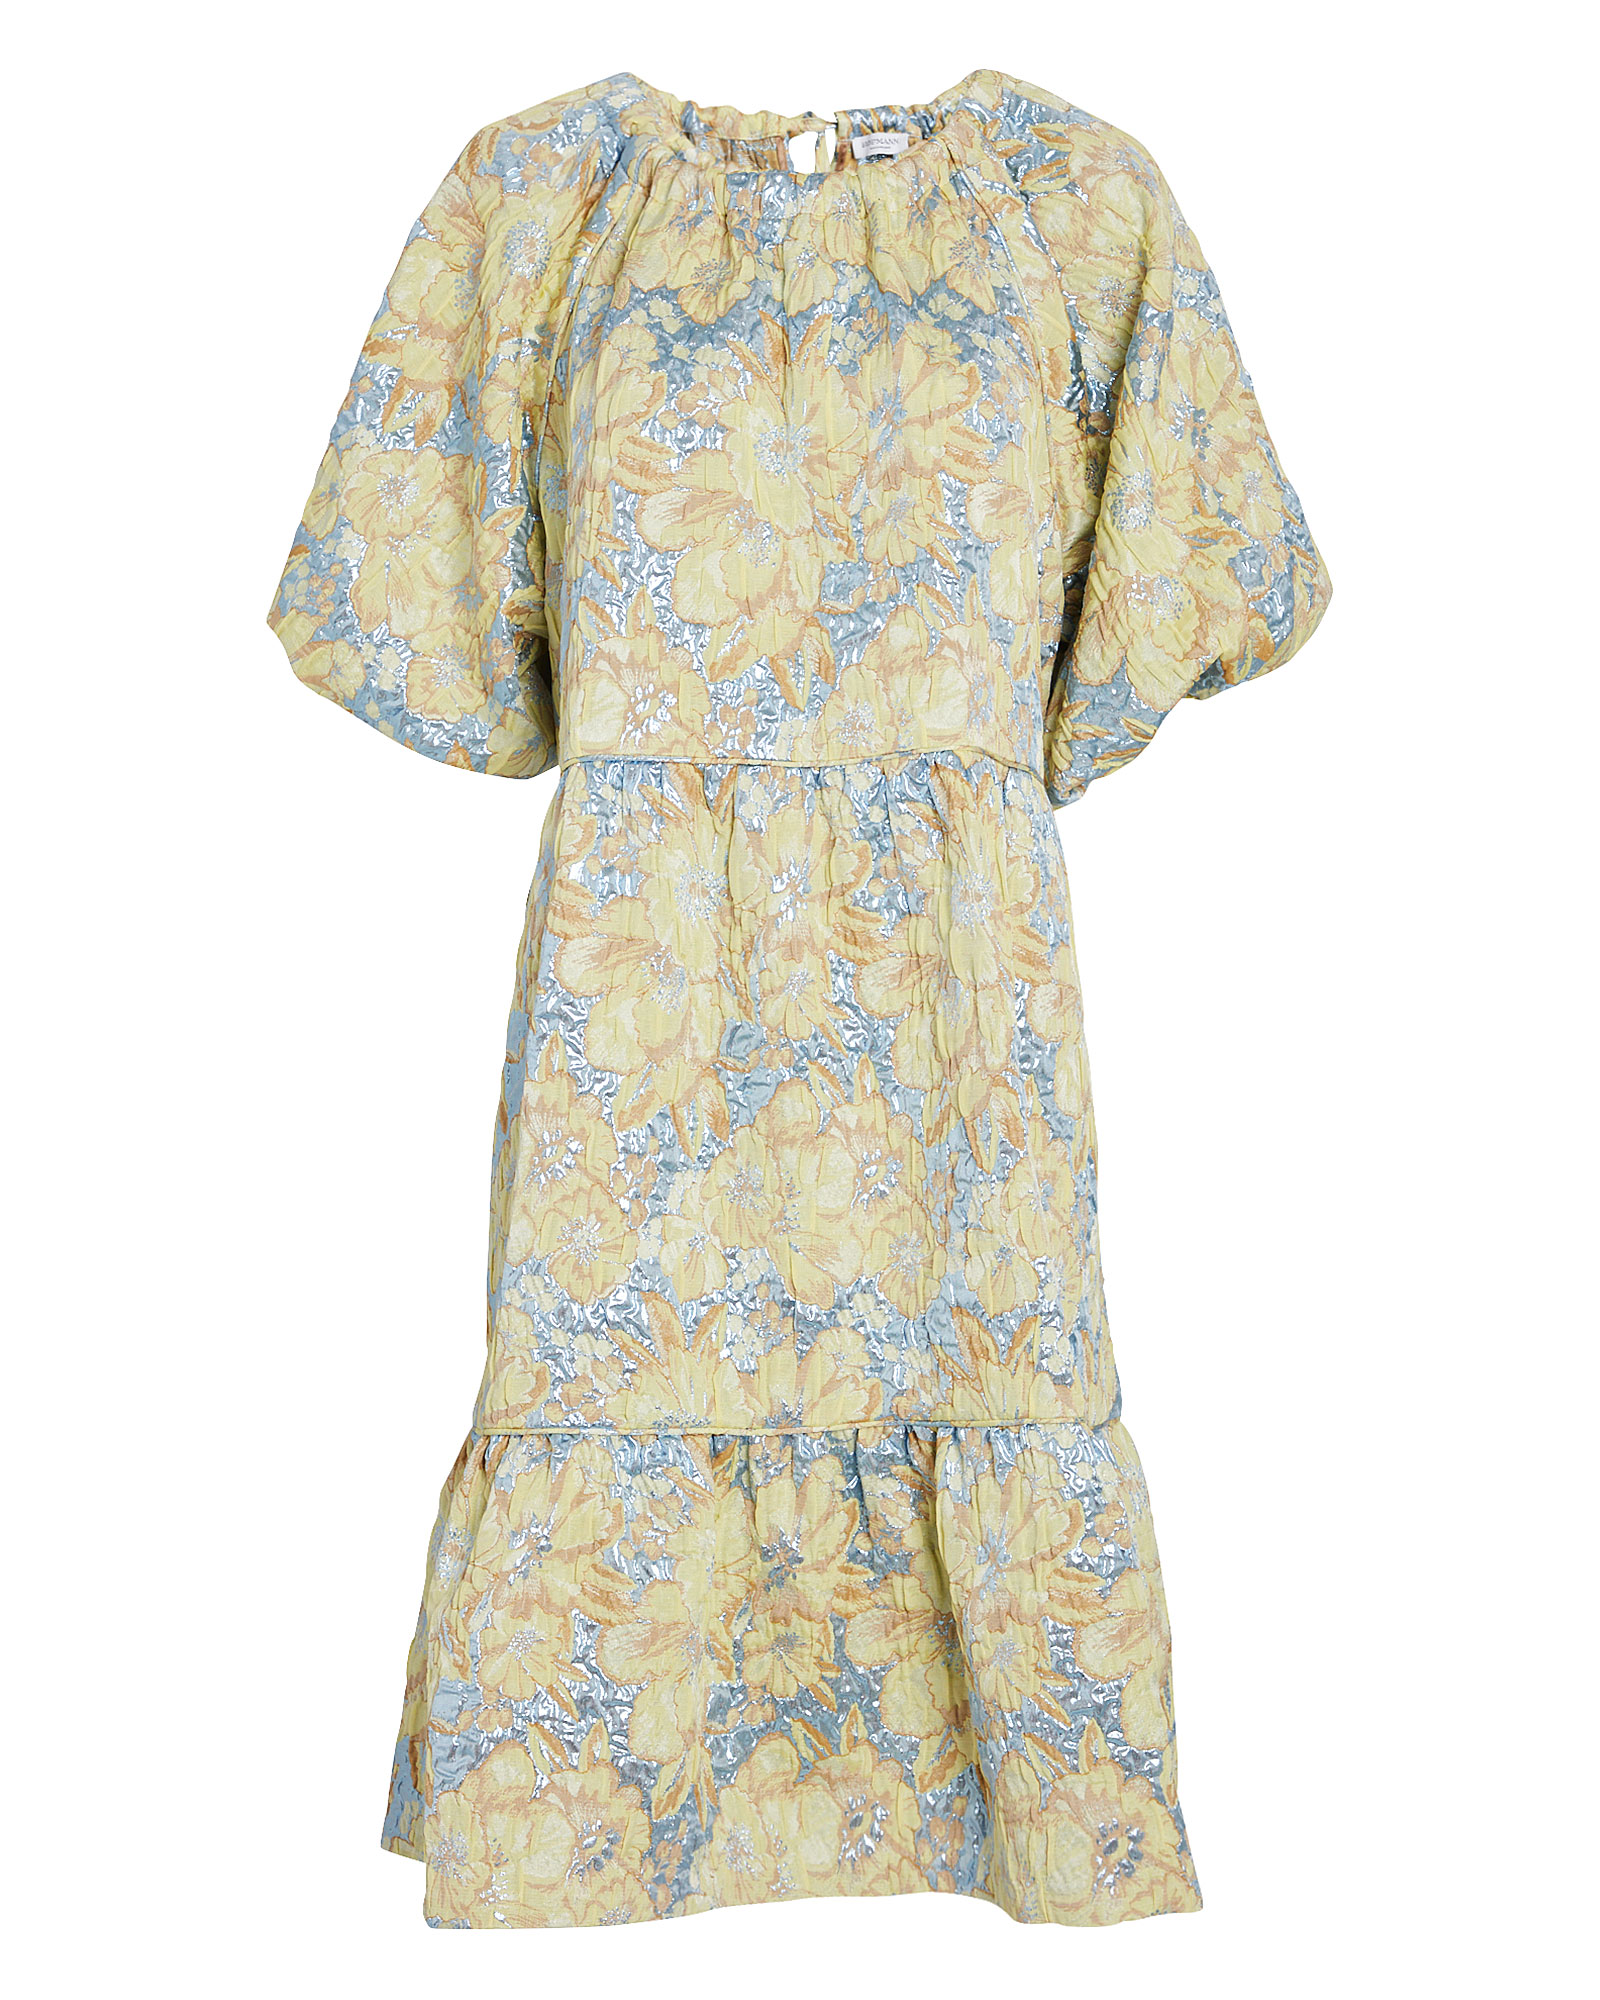 Hofmann Copenhagen | Mirielle Floral Puff Sleeve Dress | INTERMIX®